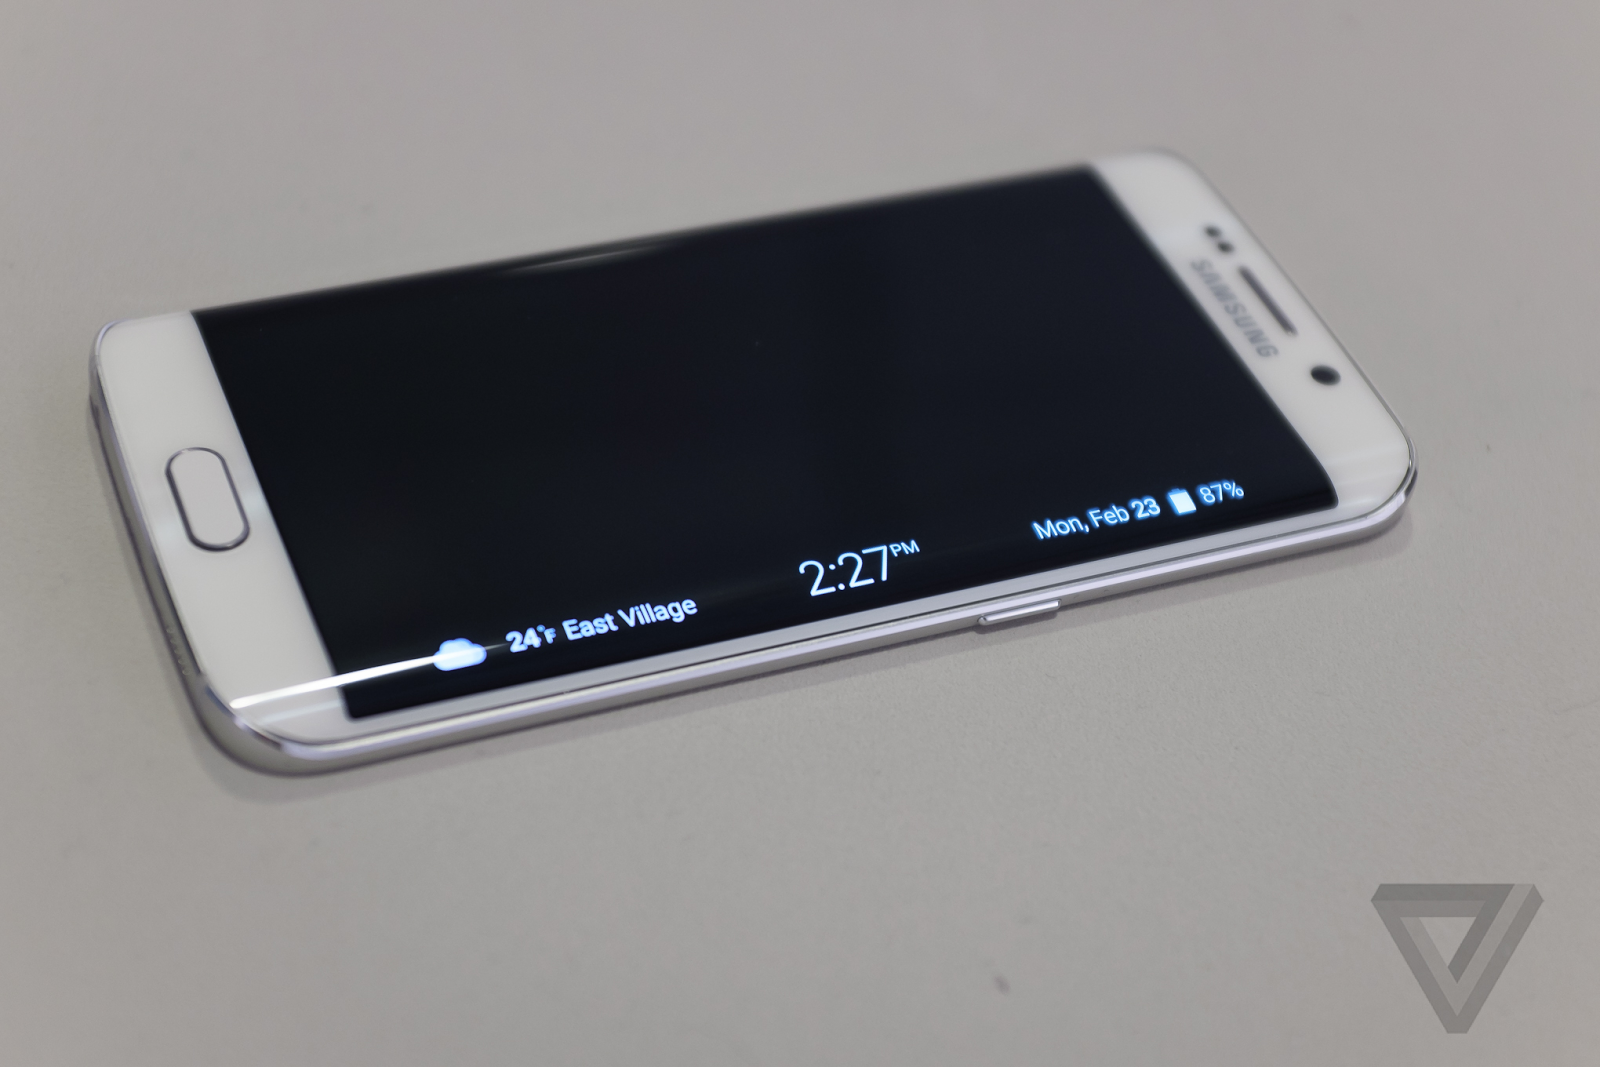 Samsung Galaxy S6 Edge Full Spesifikasi & Review (Kelebihan, Kekurangan dan Harga)